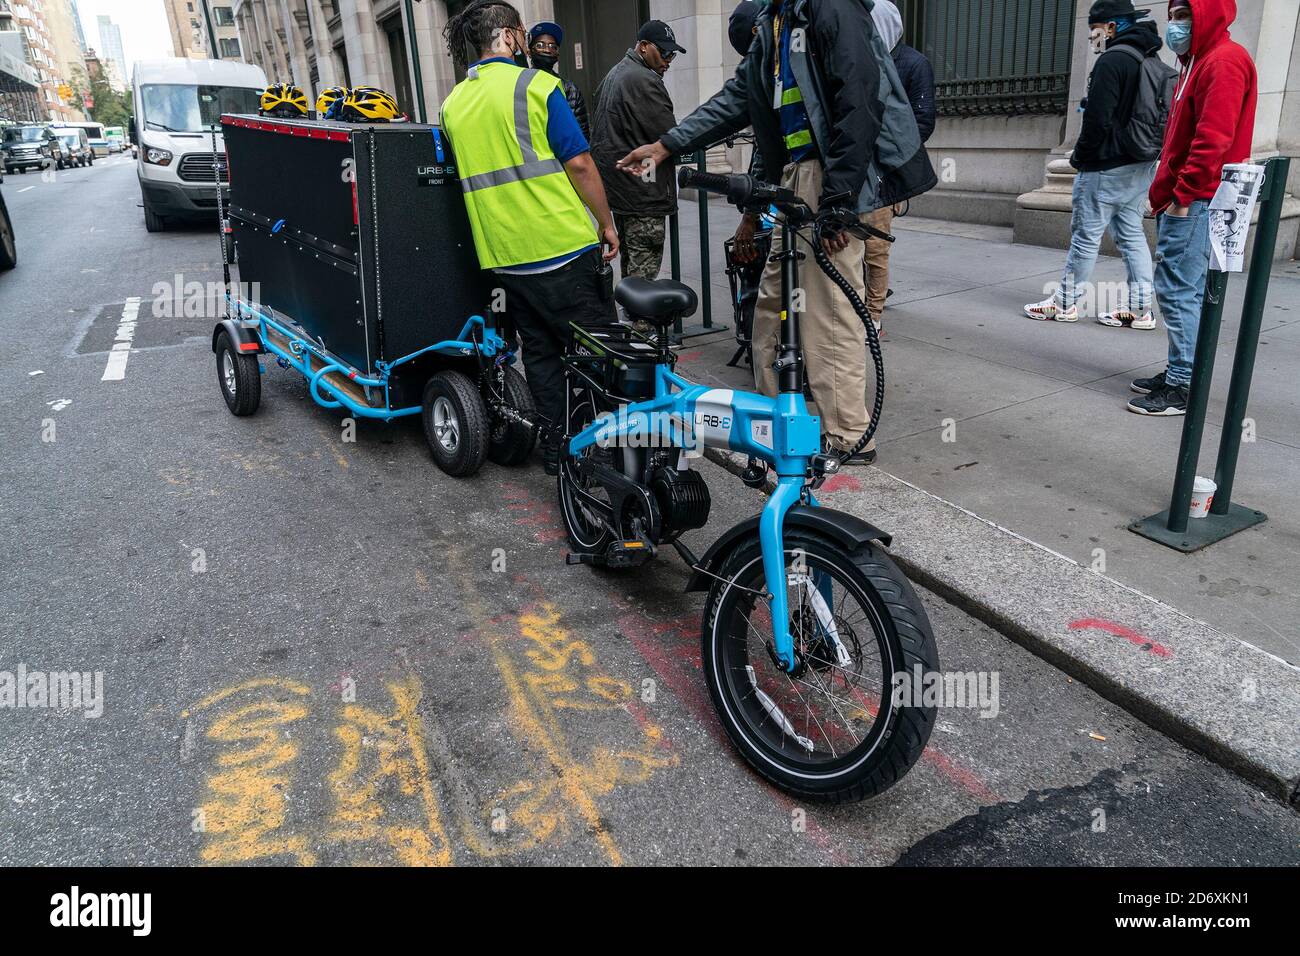 Les employés d'Amazon reçoivent une leçon sur l'utilisation des vélos Urb-E  pour la livraison à New York. Afin de rendre la livraison plus efficace et  de réduire les émissions de gaz à